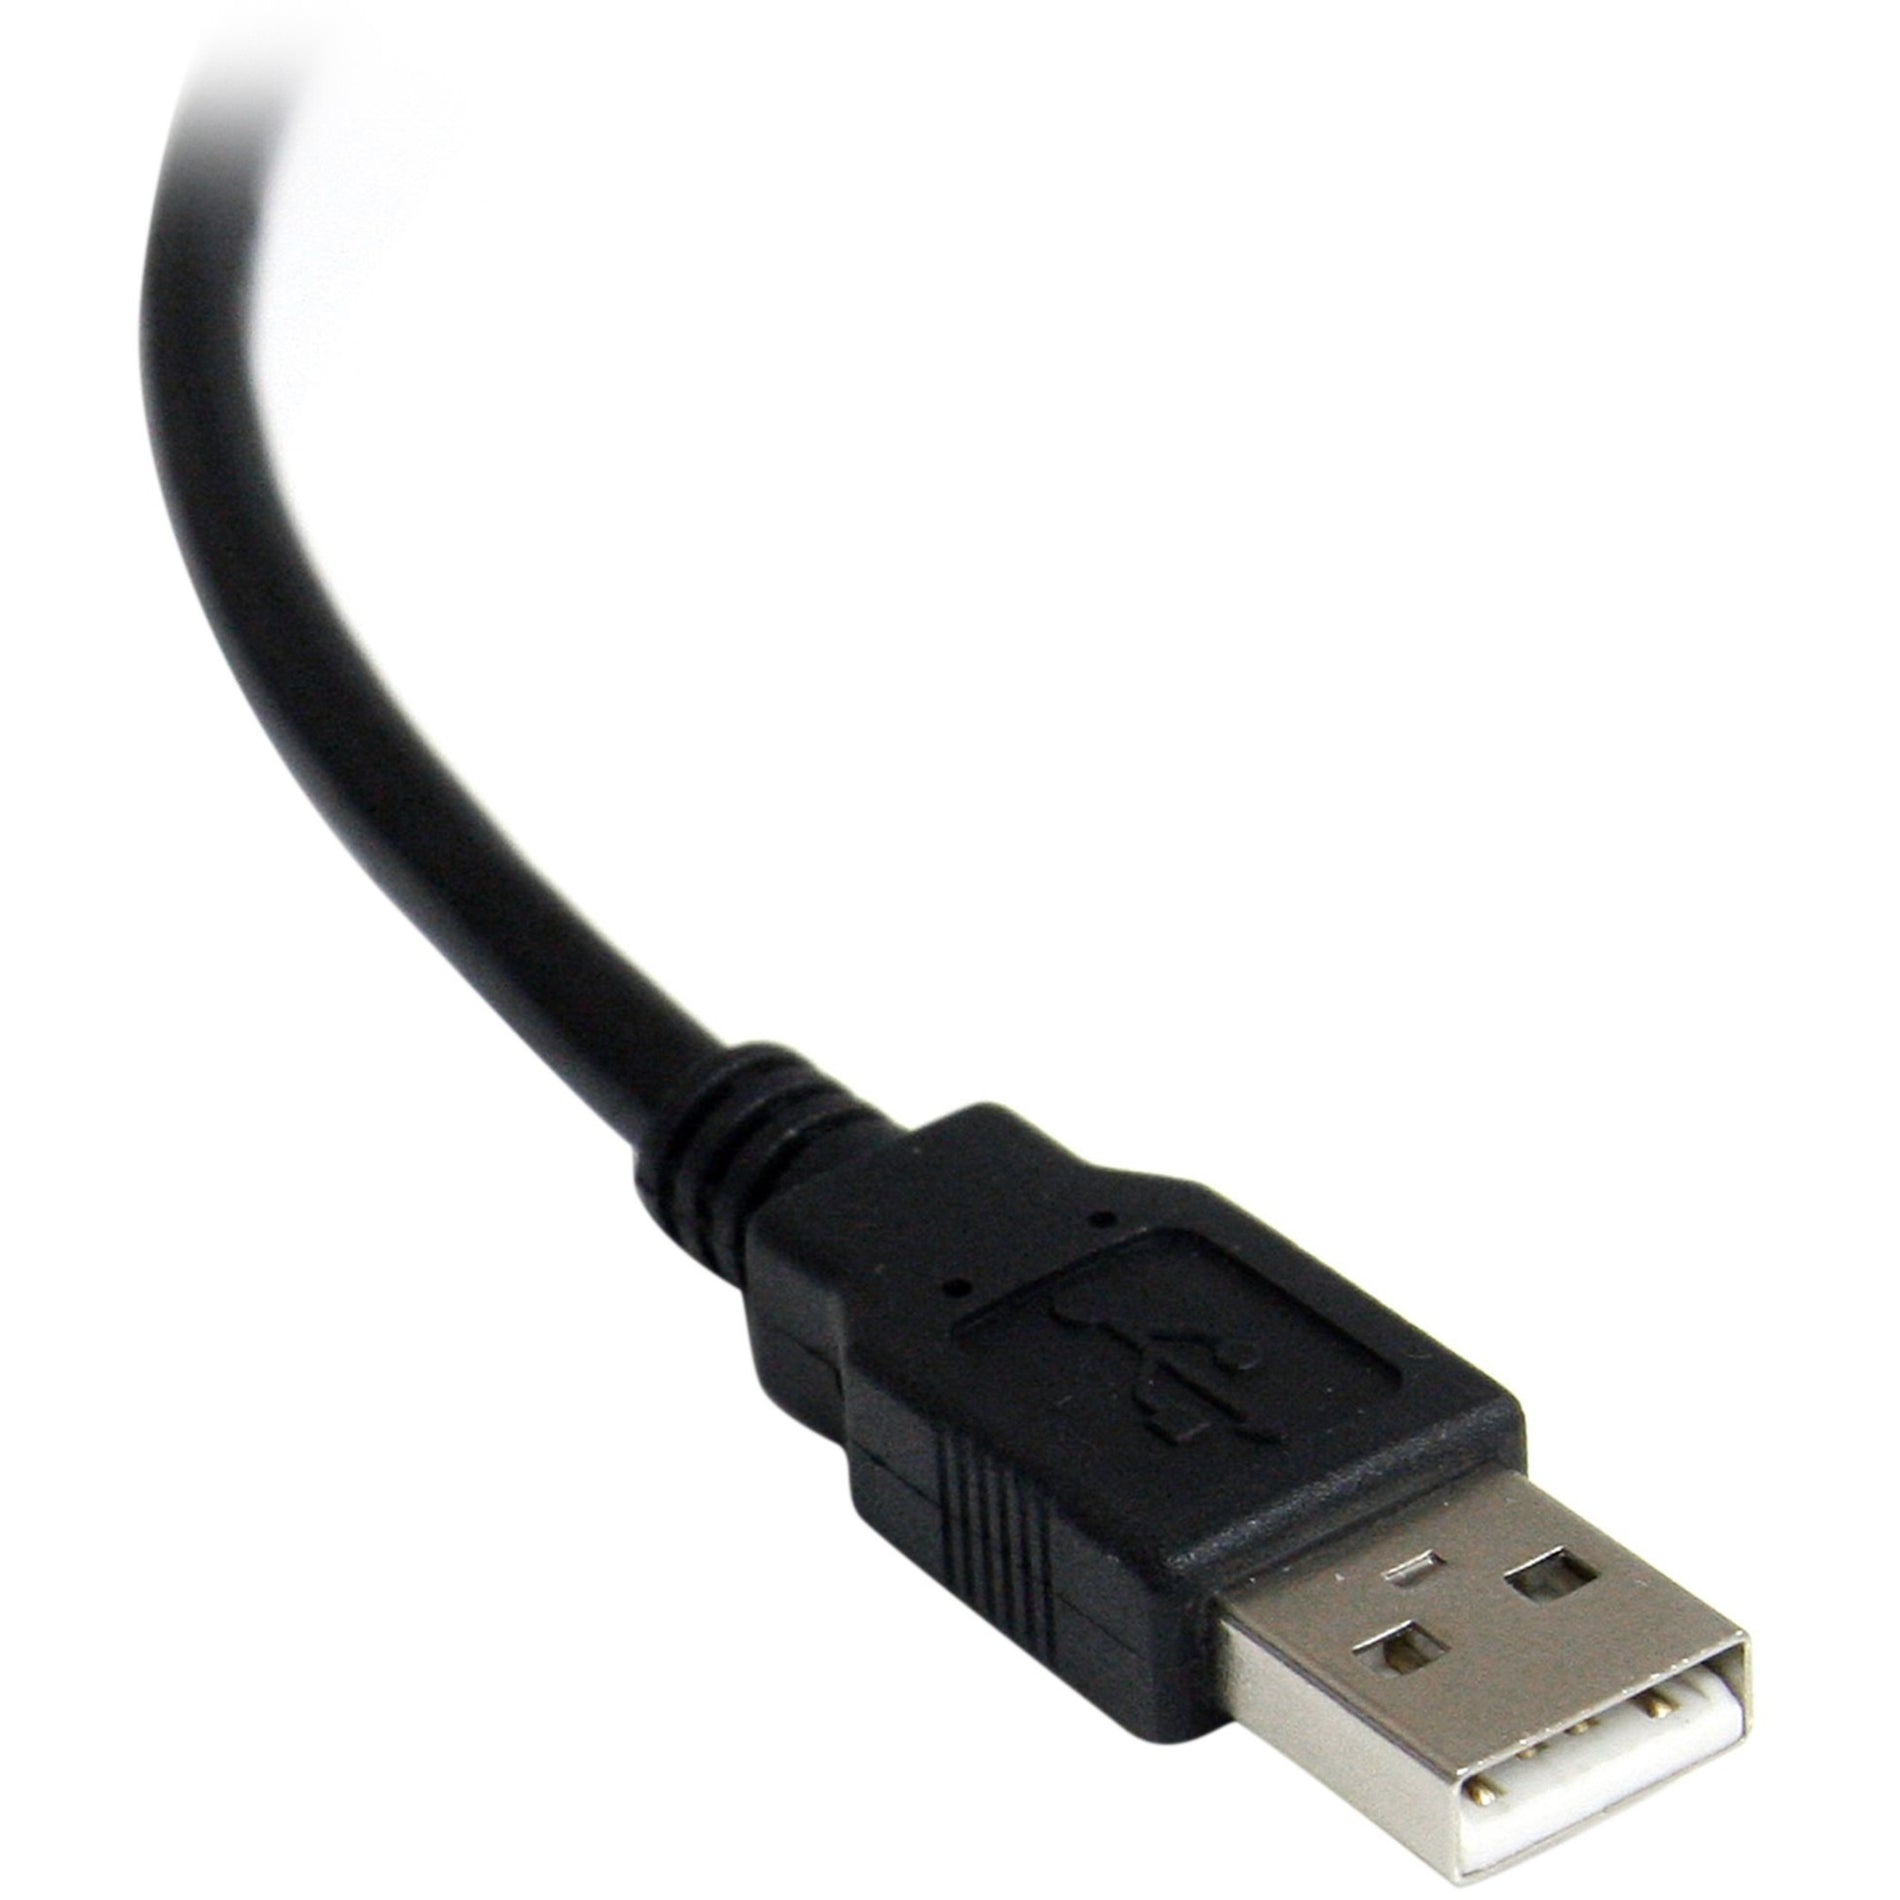 StarTech.com ICUSB2321FIS 1 Puerto FTDI USB a Serie Adaptador de Cable RS232 con Aislamiento Protección contra Sobretensiones Longitud del Cable de 8.20 pies Negro